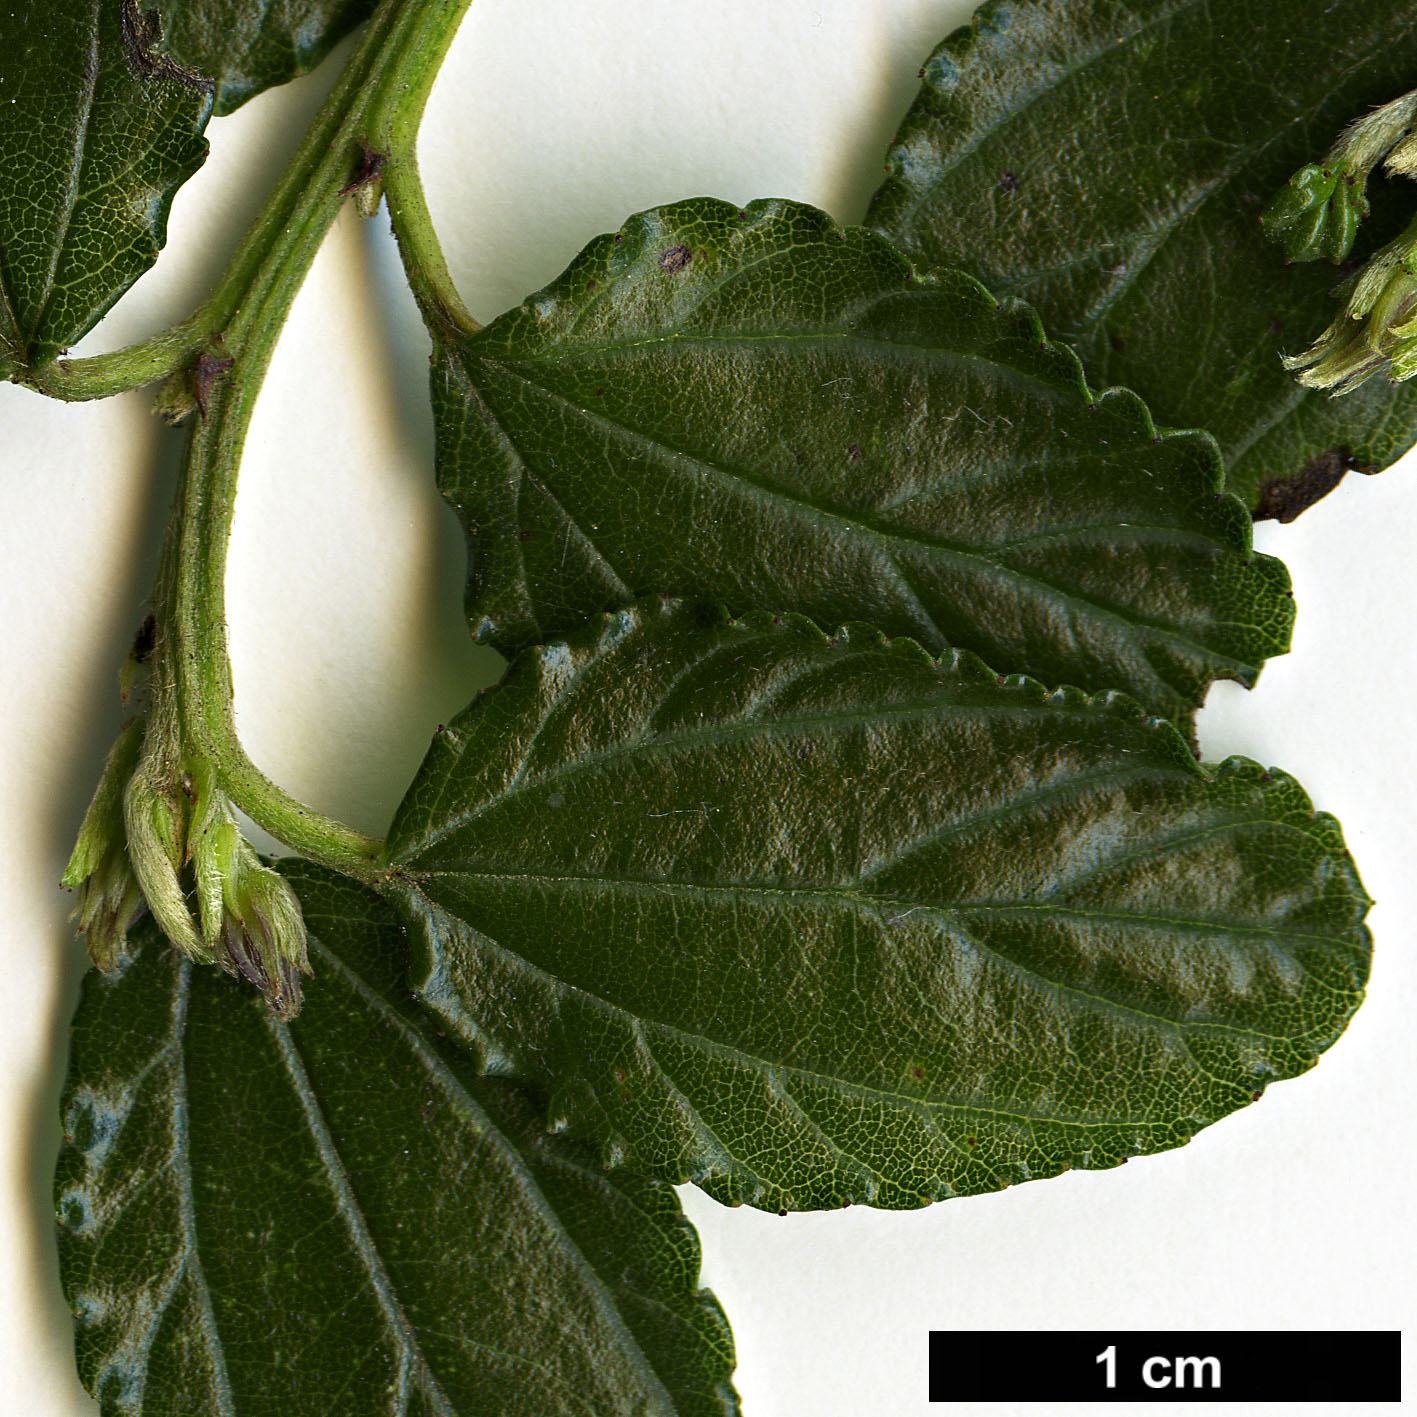 High resolution image: Family: Rhamnaceae - Genus: Ceanothus - Taxon: repens